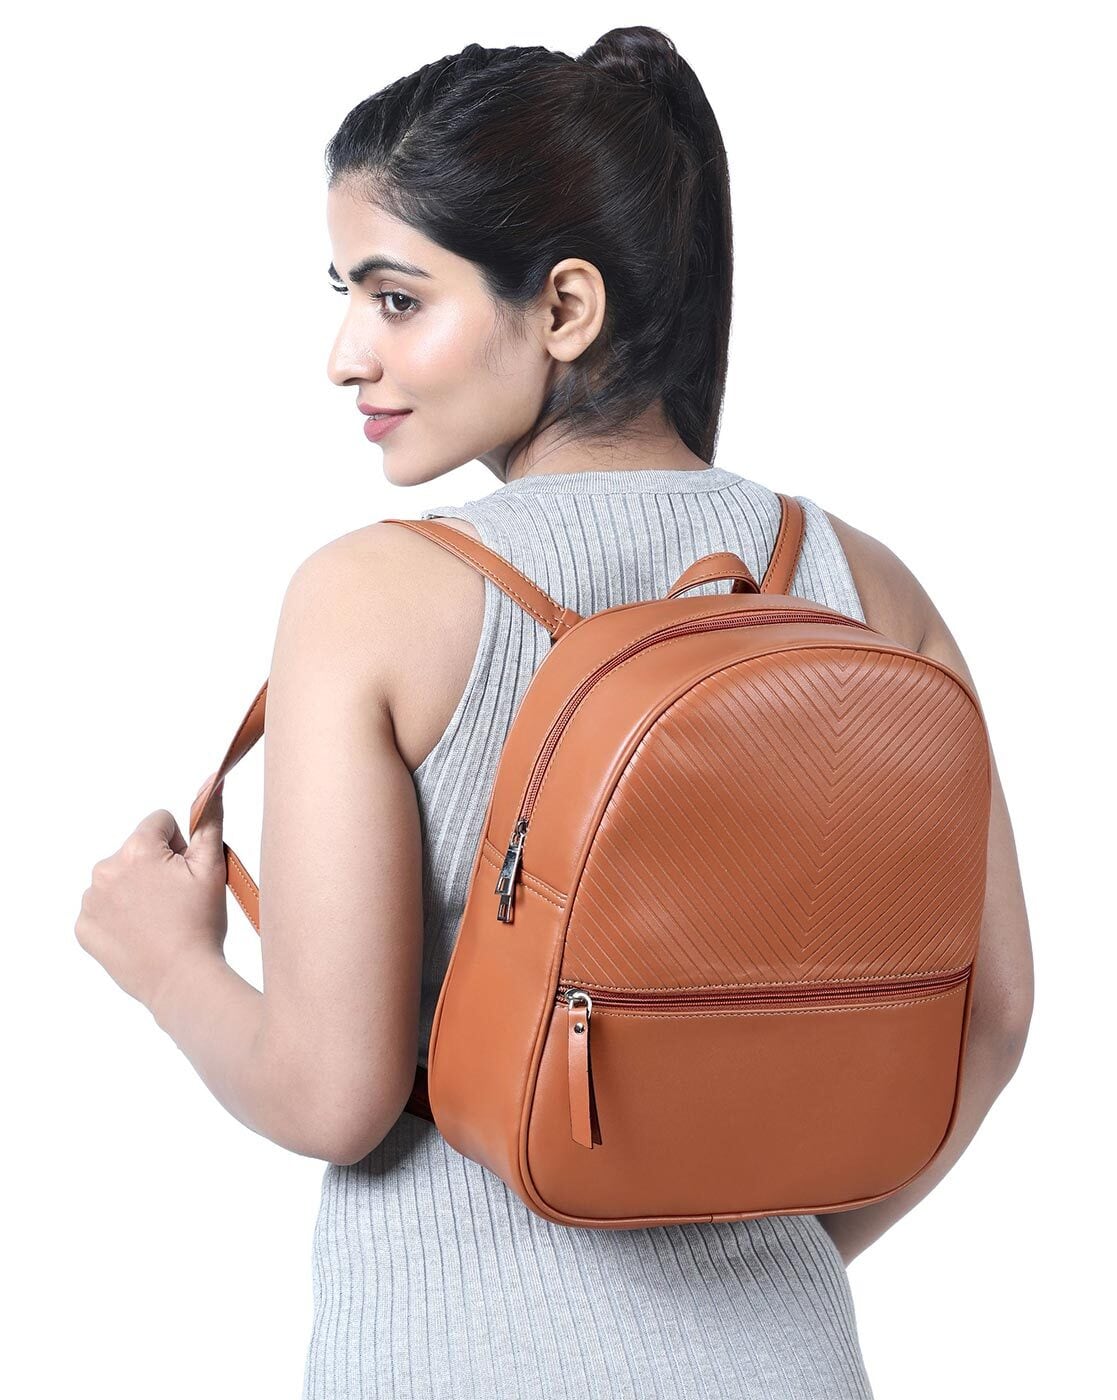 Leather backpack purse, women shoulder bag in orange - Backpacks